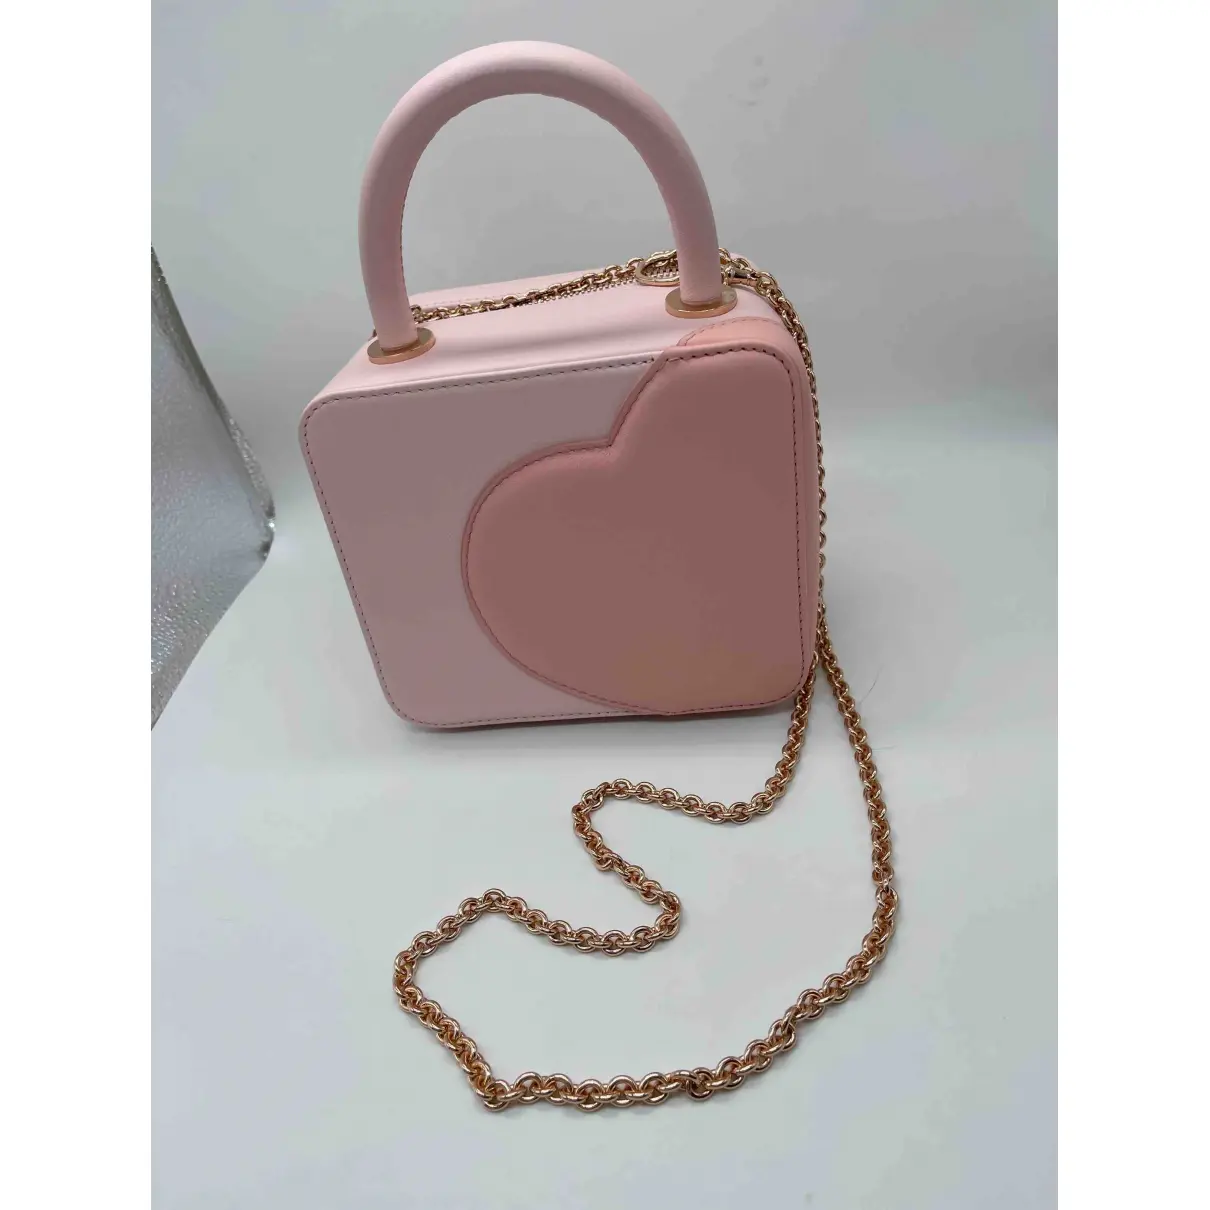 Leather handbag Chopard